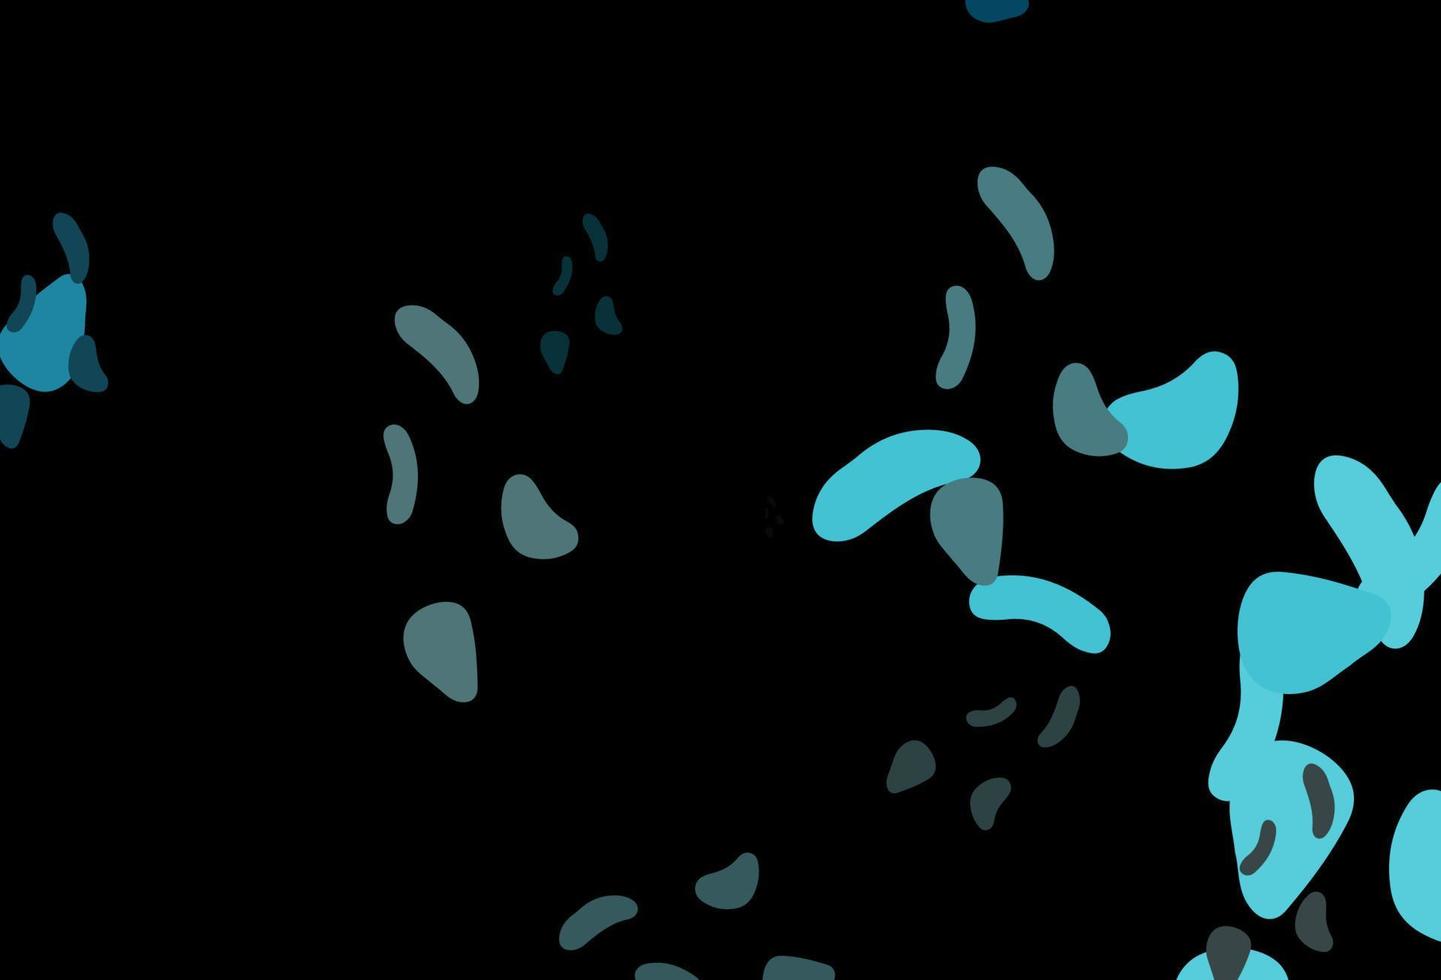 padrão de vetor azul escuro com formas caóticas.